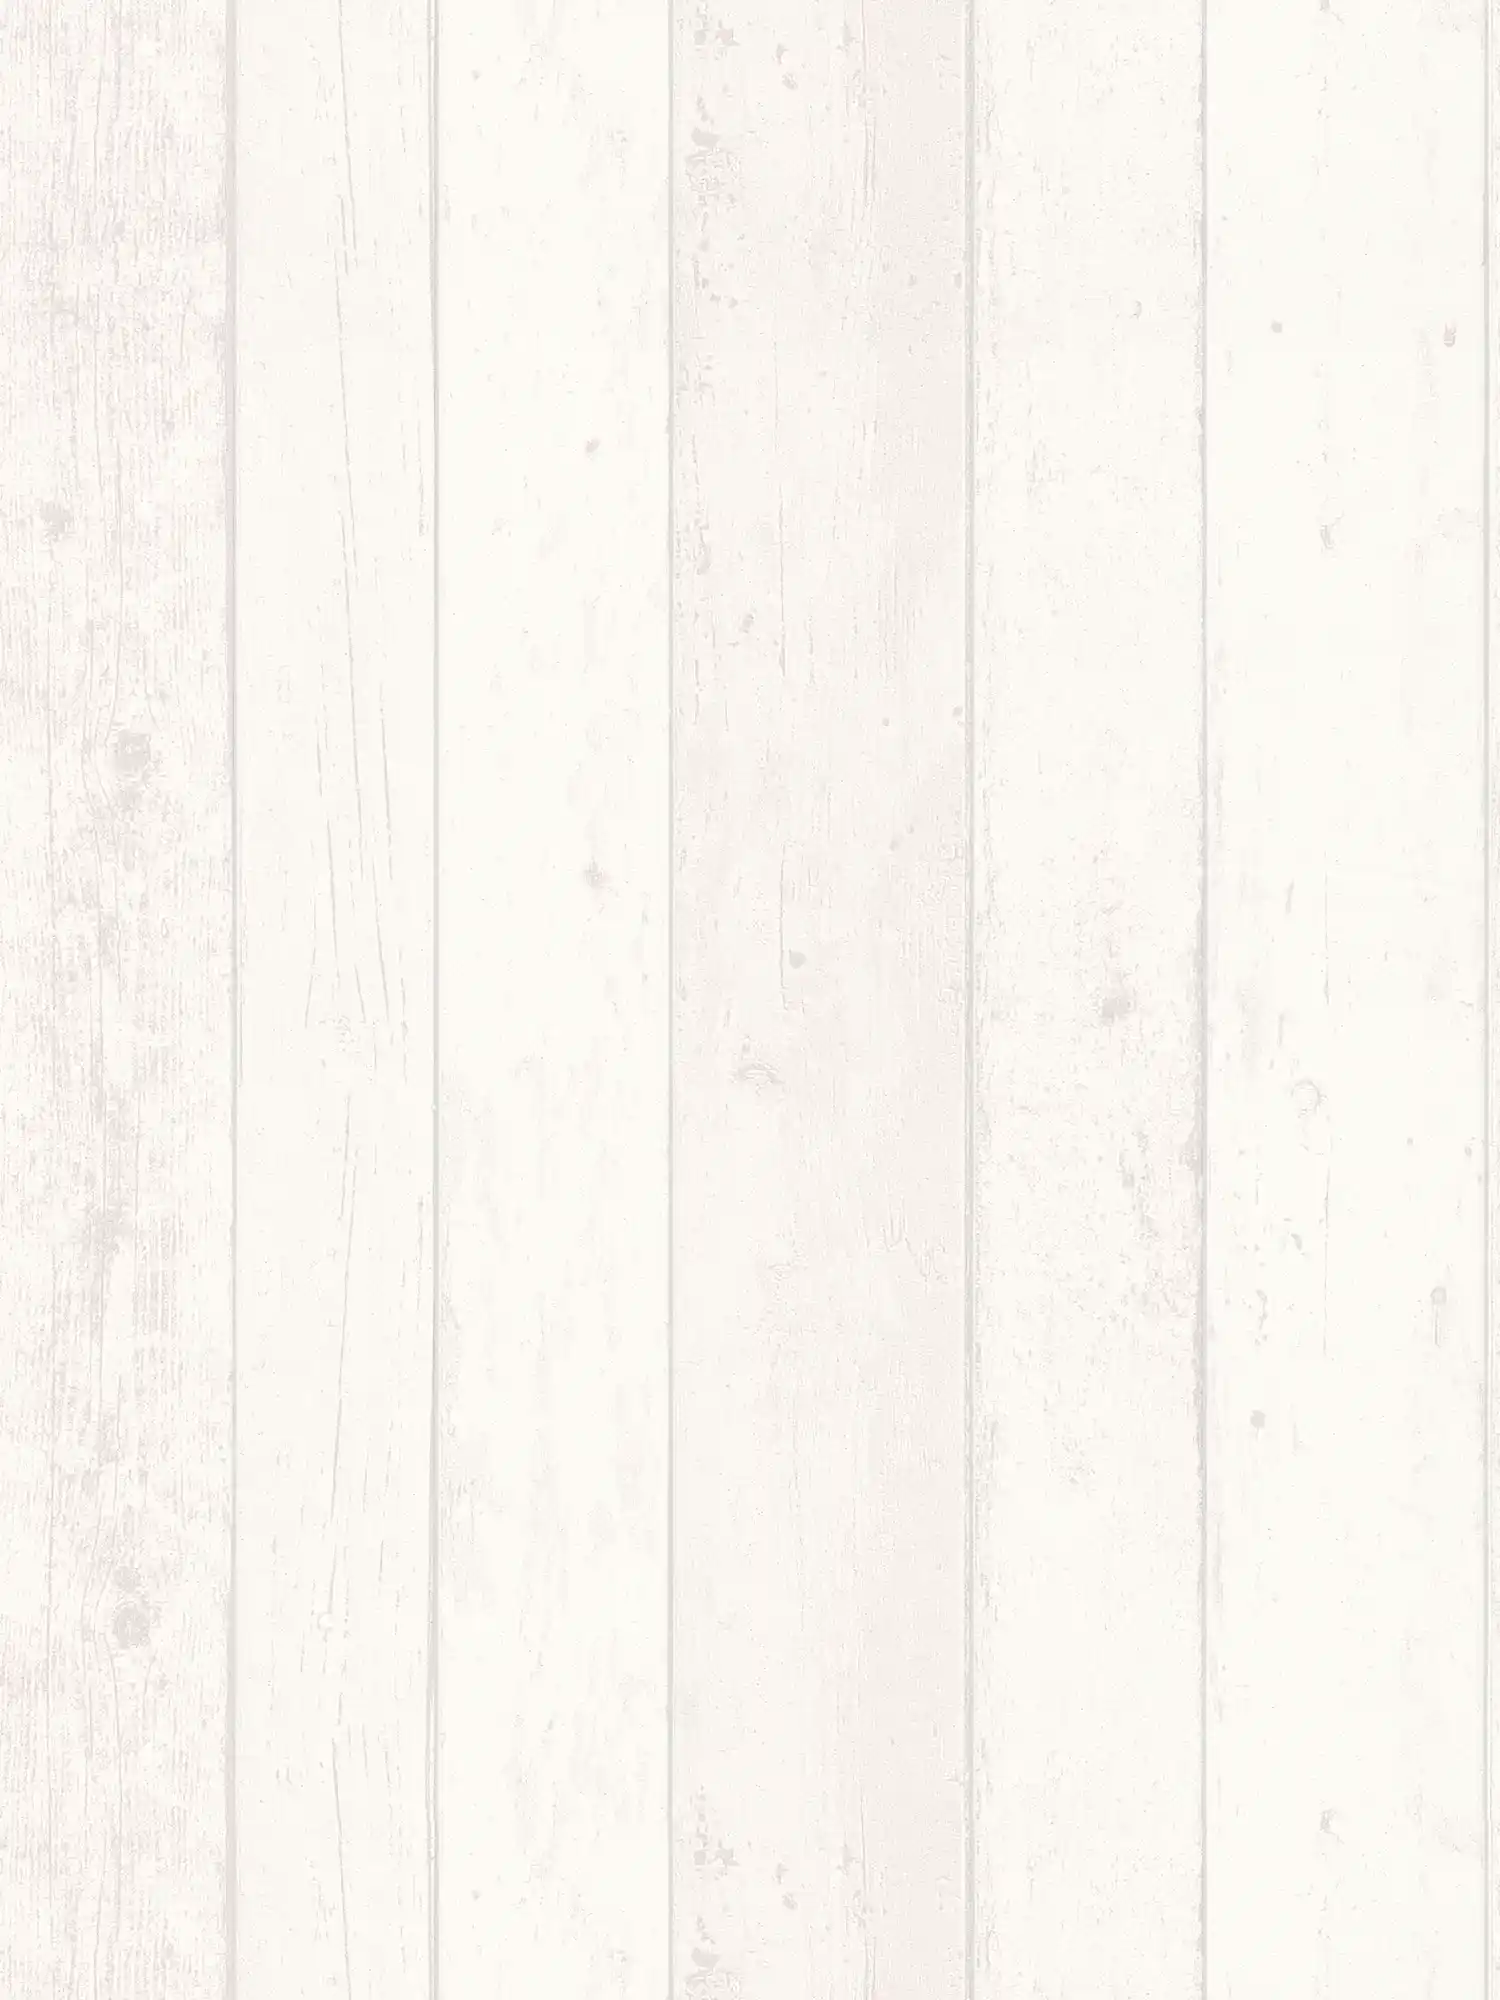 Behang met houteffect in Shabby Chic stijl - wit, grijs
